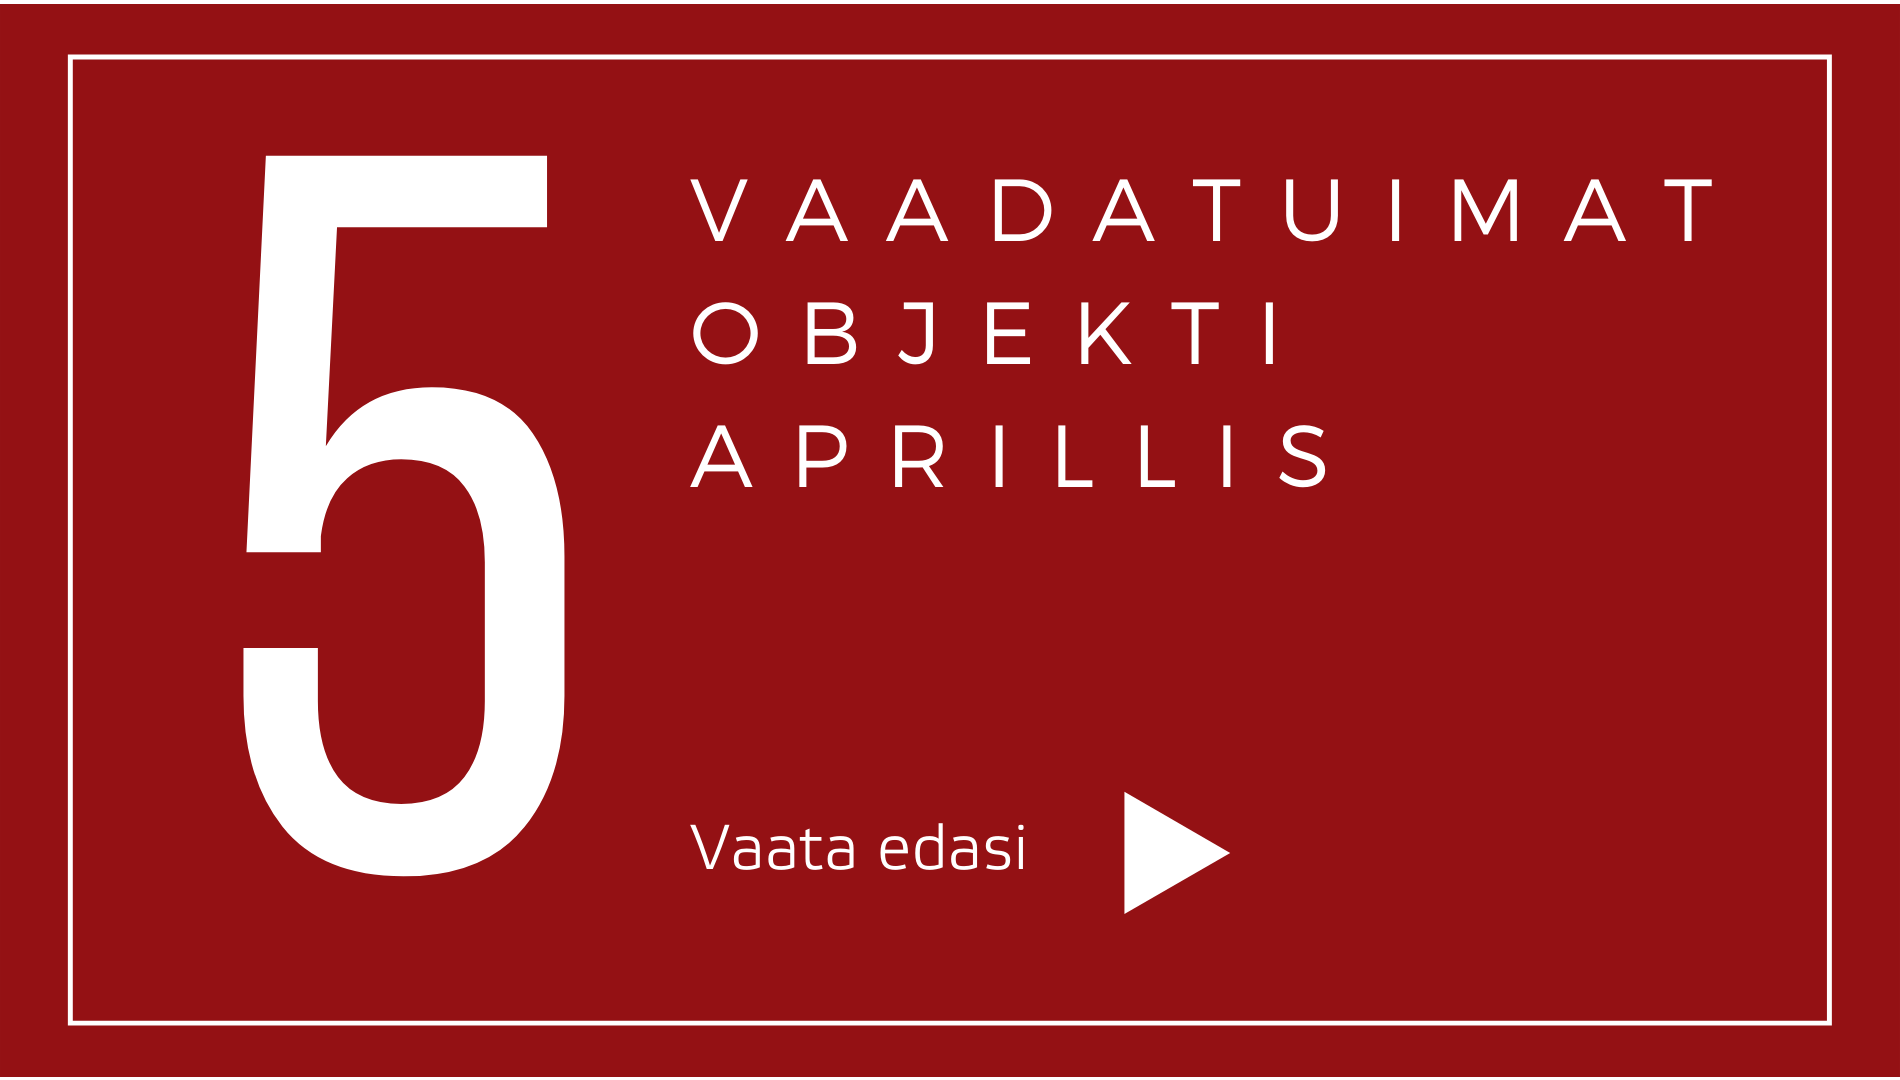 TOP 5 objektid: Aprillis pälvis suurima huvi eramu Pärnu külje all Tammistes